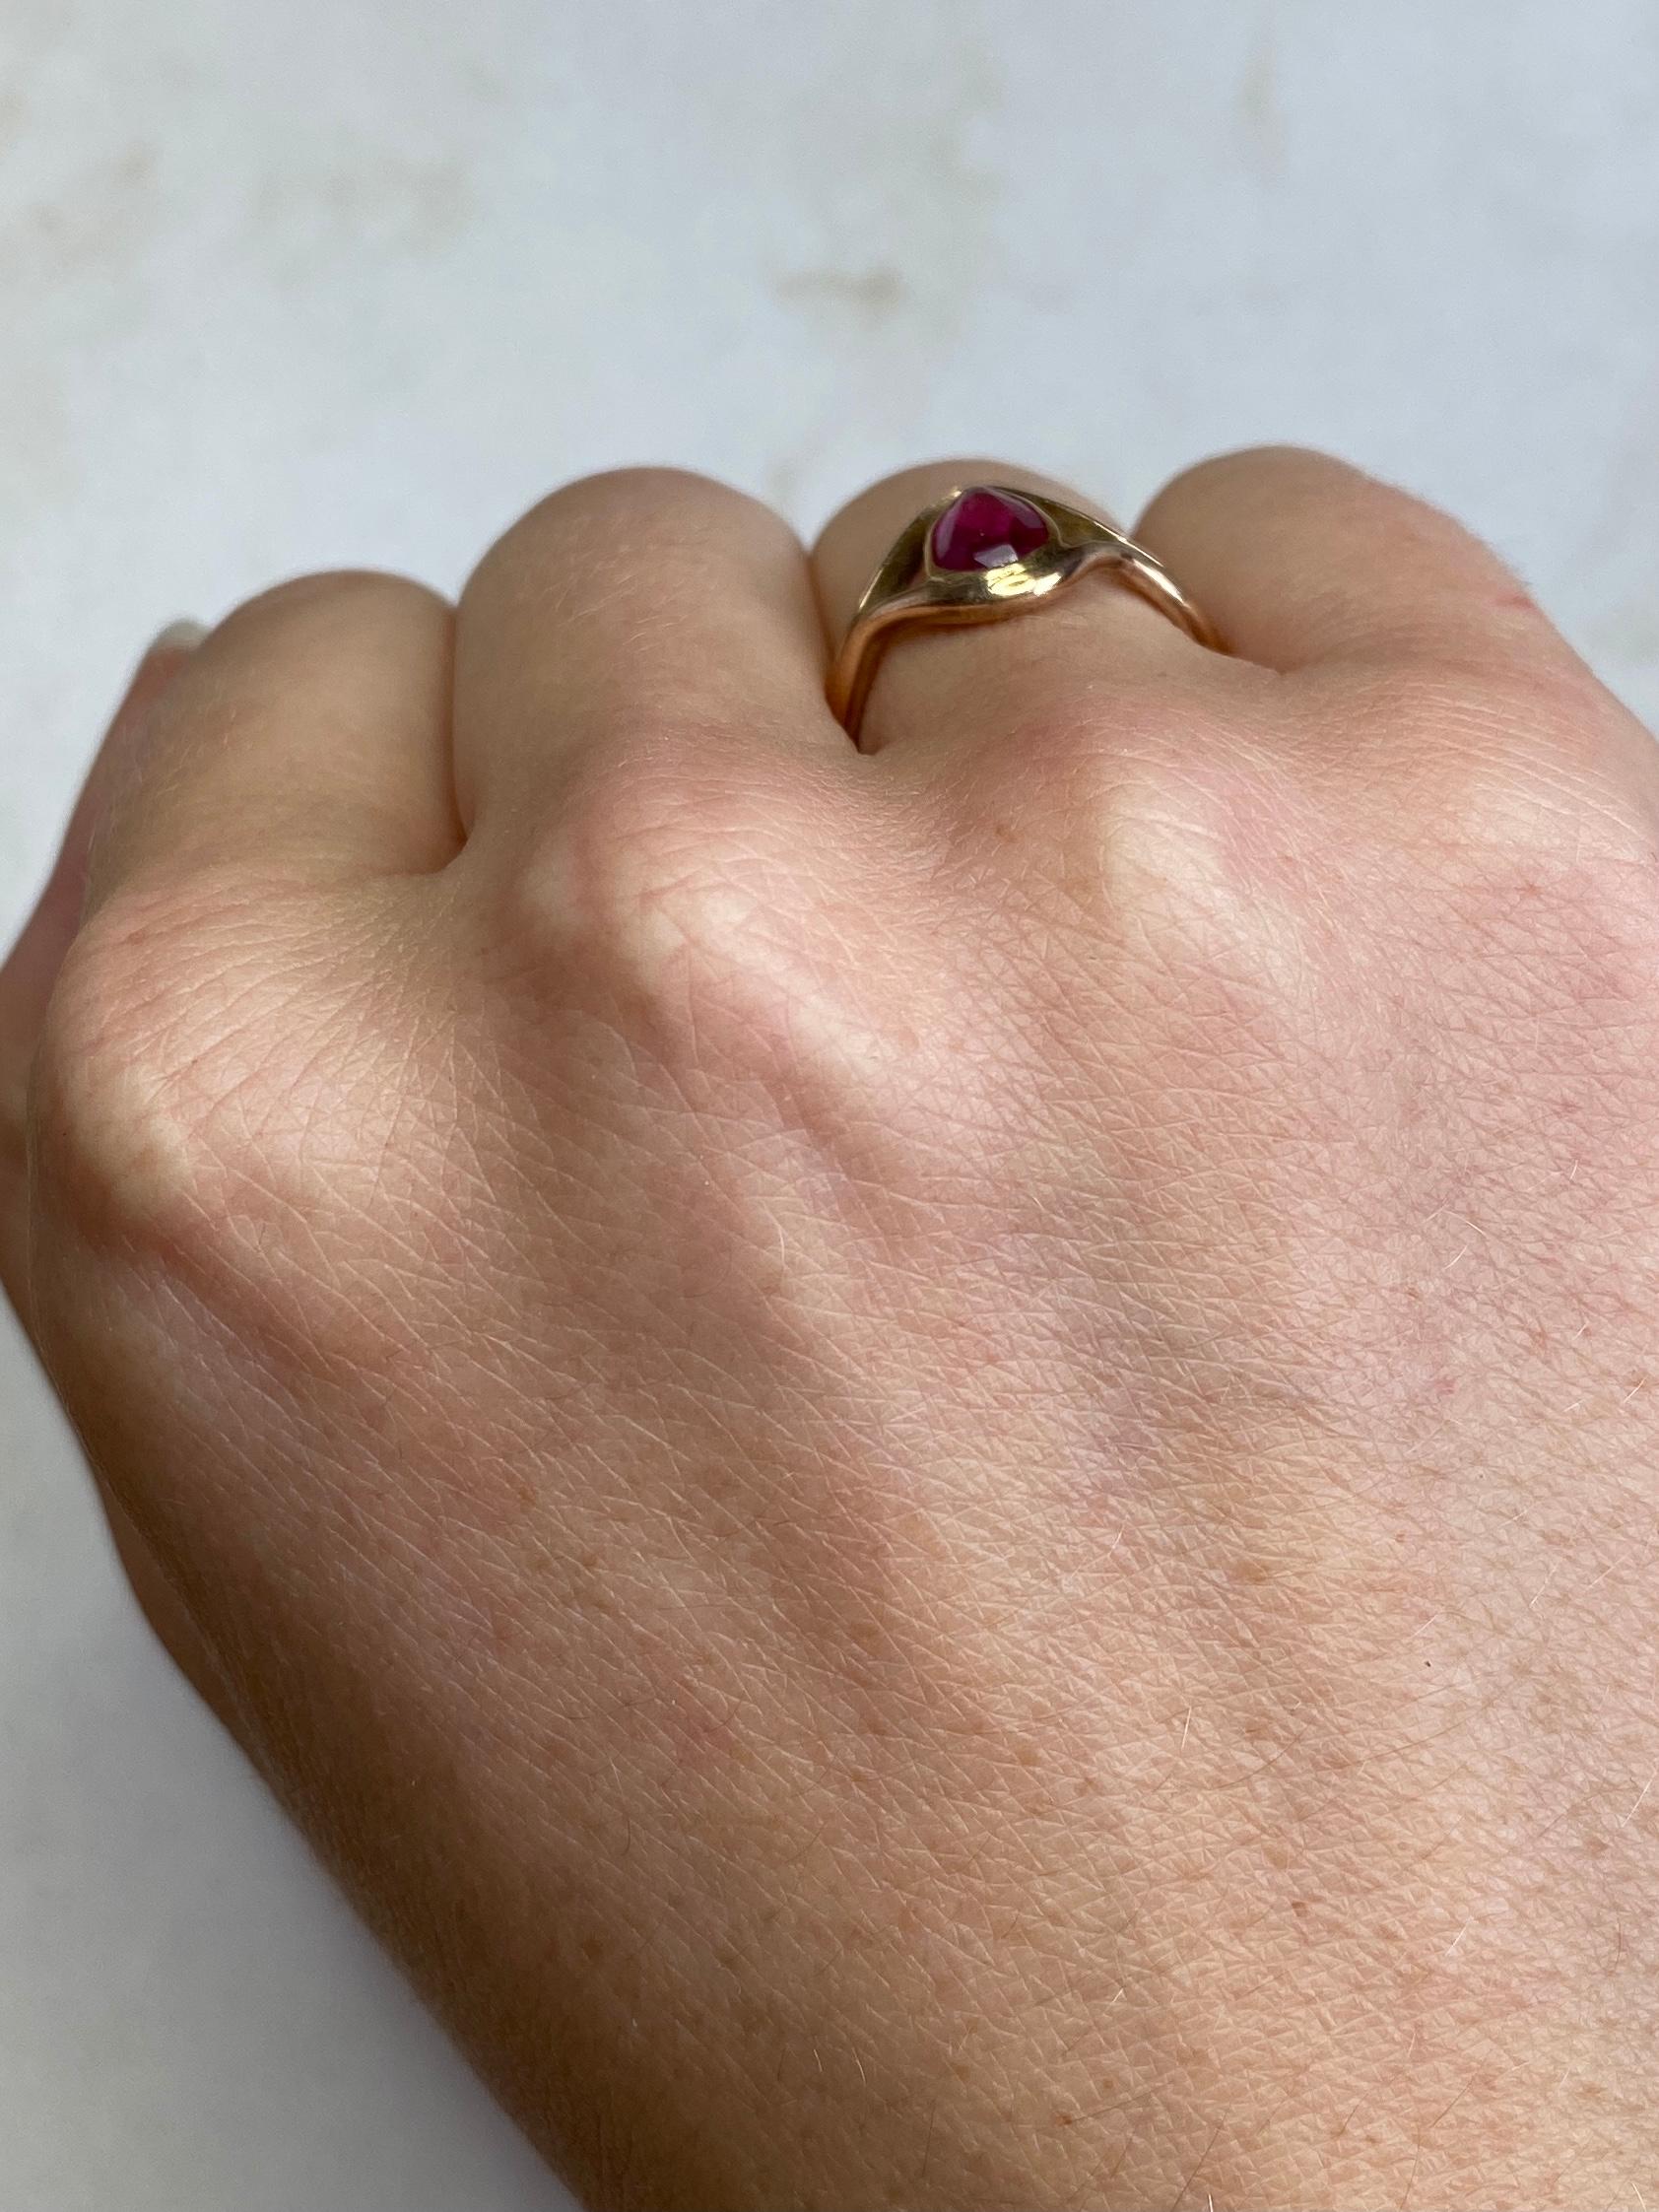 In diesem wunderschönen Ring aus 9 Karat Gold ist ein glänzender 80pt Rubin eingefasst. Vollständig gestempelt London 1942.

Ringgröße: K 1/2 oder 5 1/2 

Gewicht: 2,9g